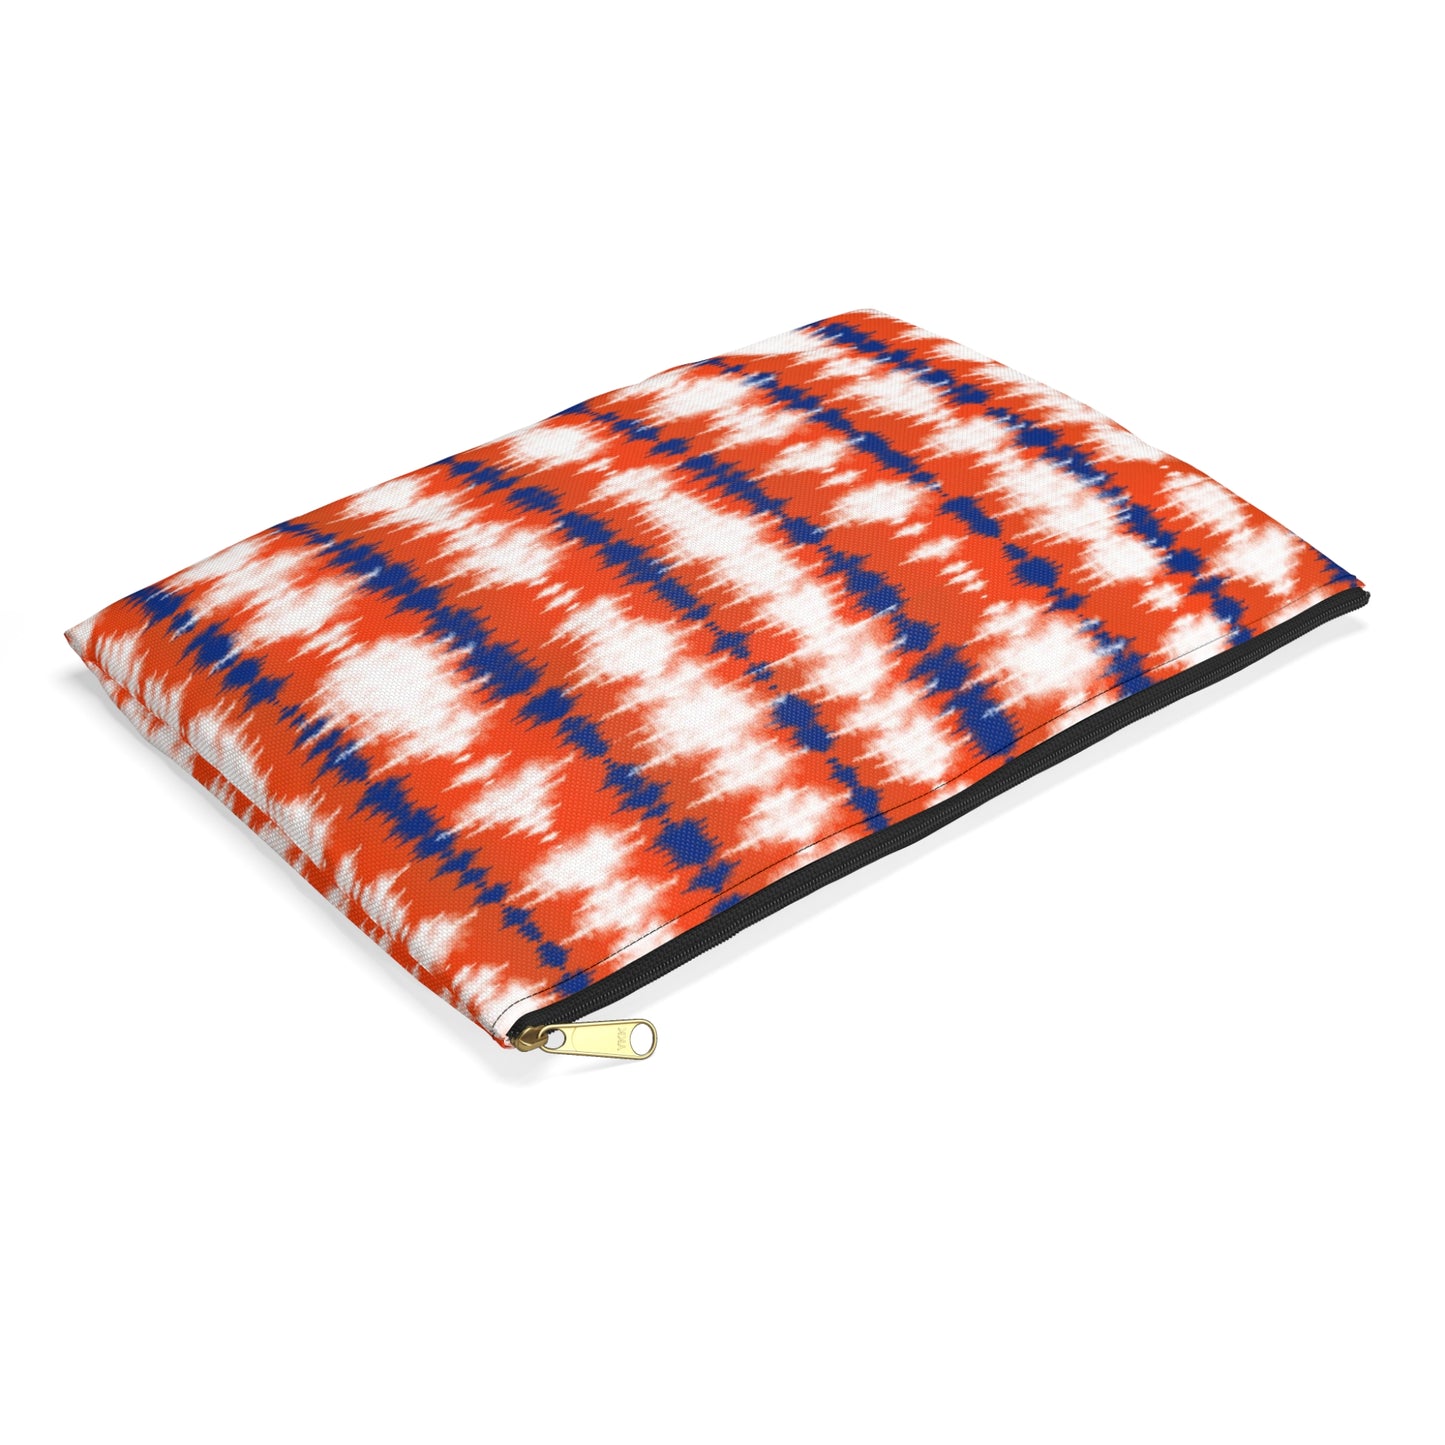 Orange and Blue Tie Dye - Accessory Pouch / Makeup Case / Travel Pouch / Pencil case / Art Case